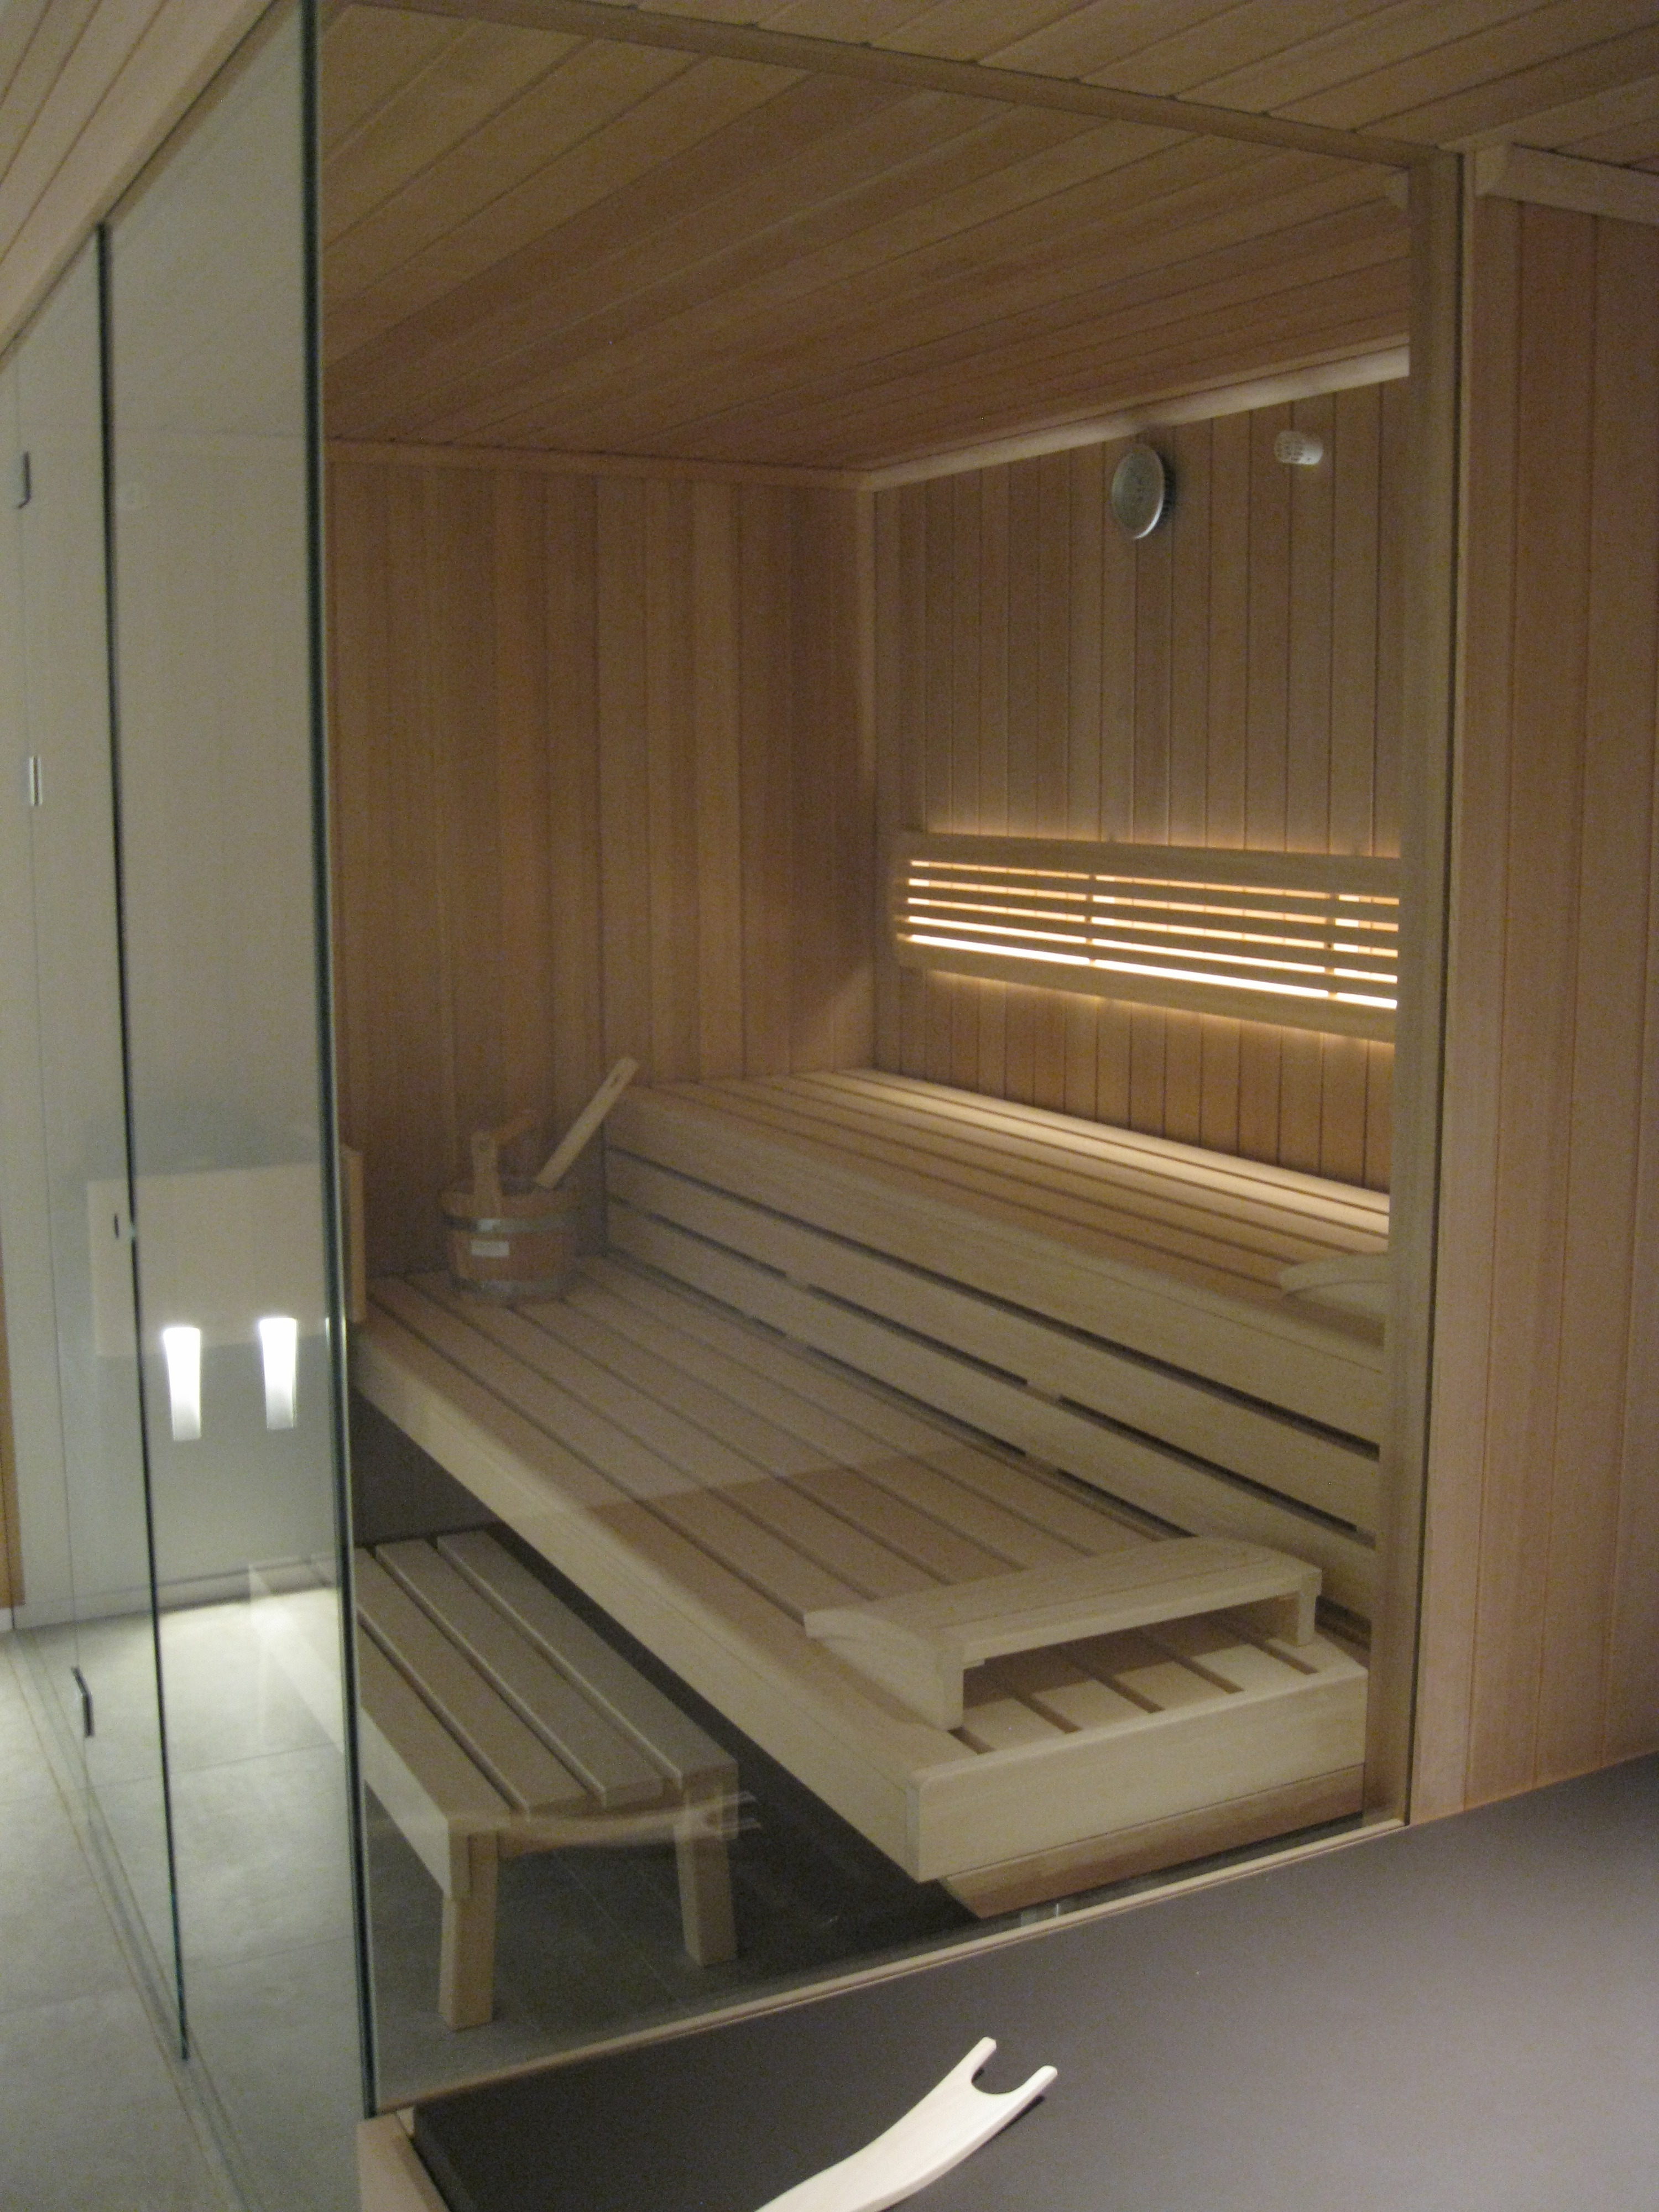 sauna-op-maat-hanolux-antwerpen-turnhout-klafs-7.jpg